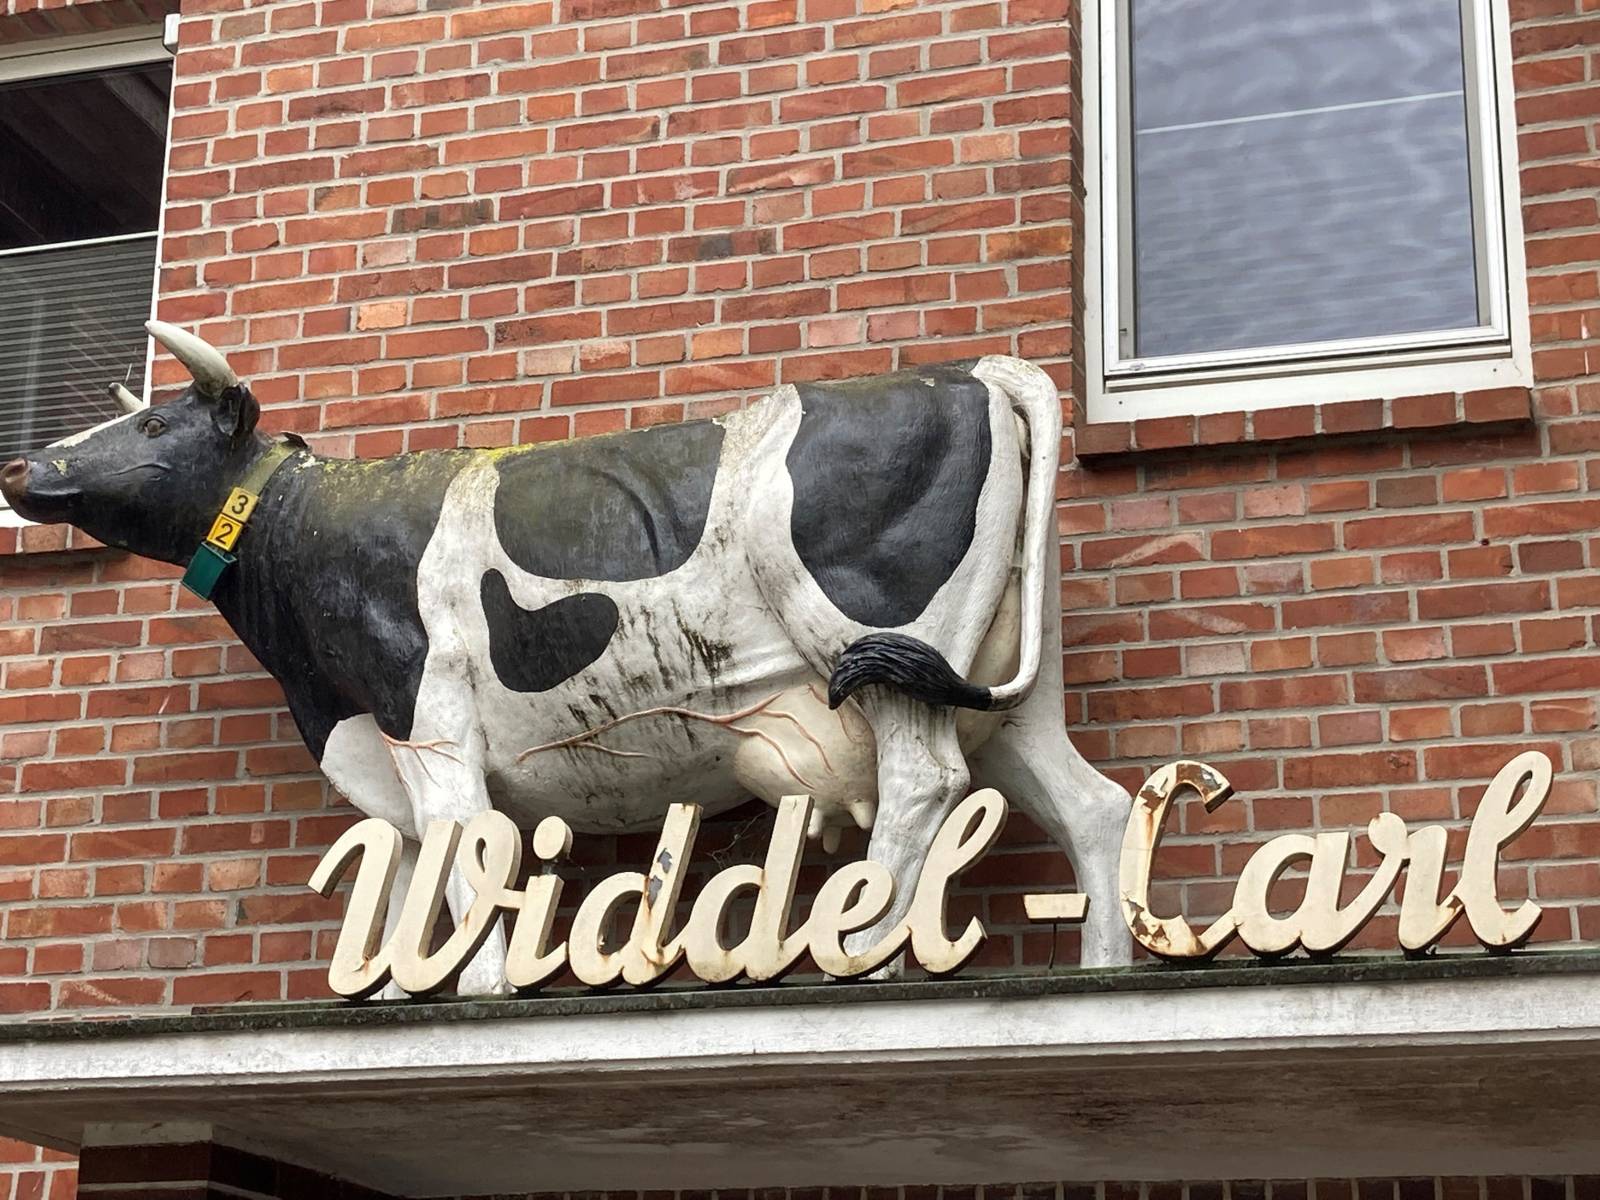 Eingang eines Bauernhofes mit dem Schriftzug Widdel-Carl und einer lebensgroßen Kuhfigur